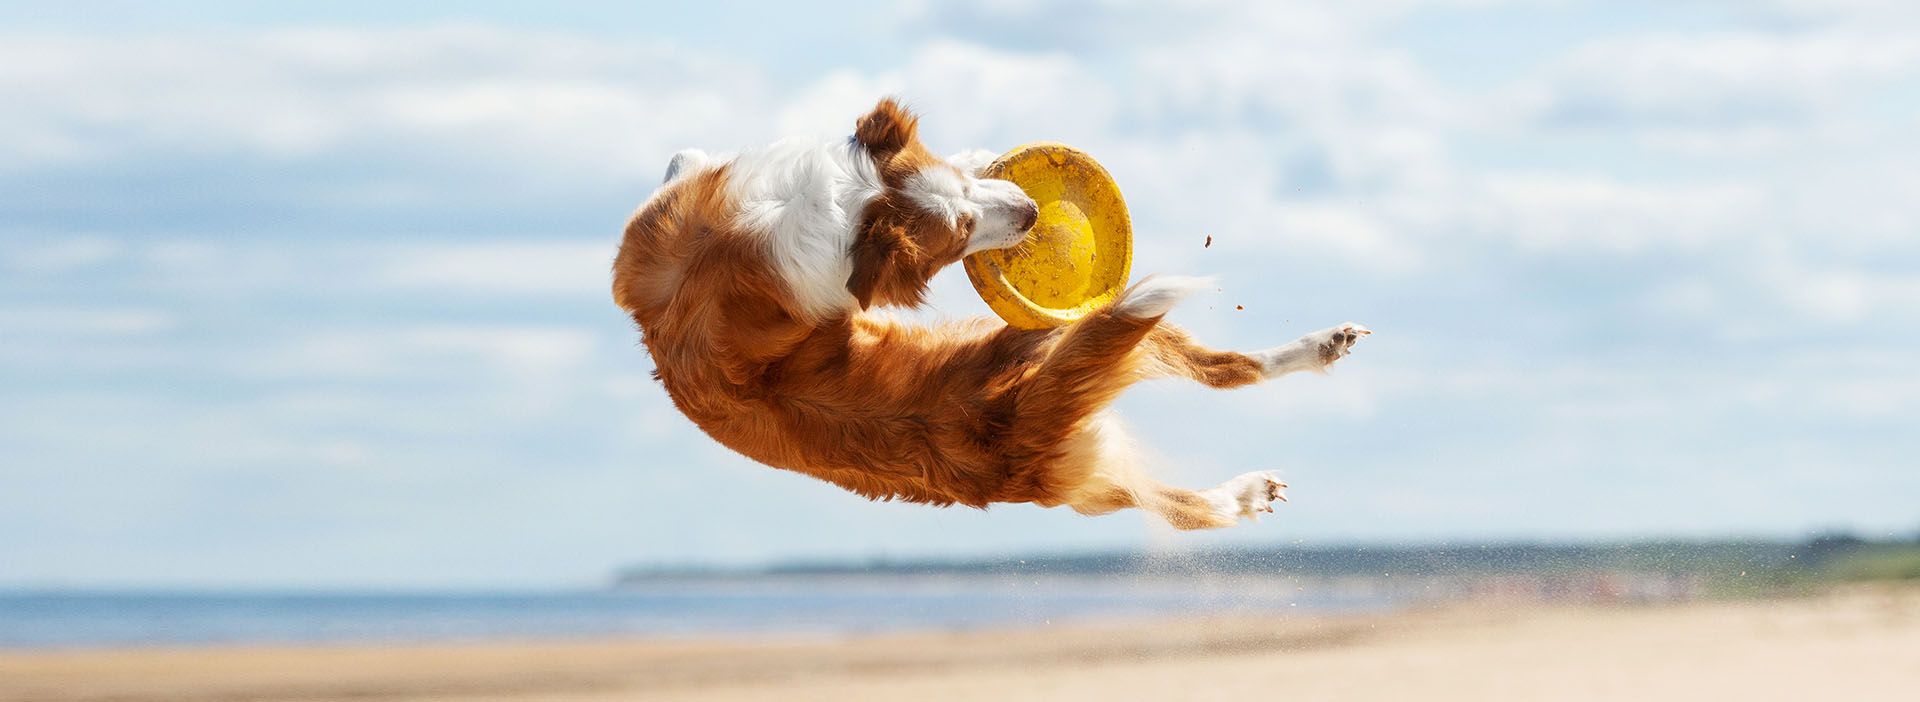 Hund fängt Frisbee am Strand